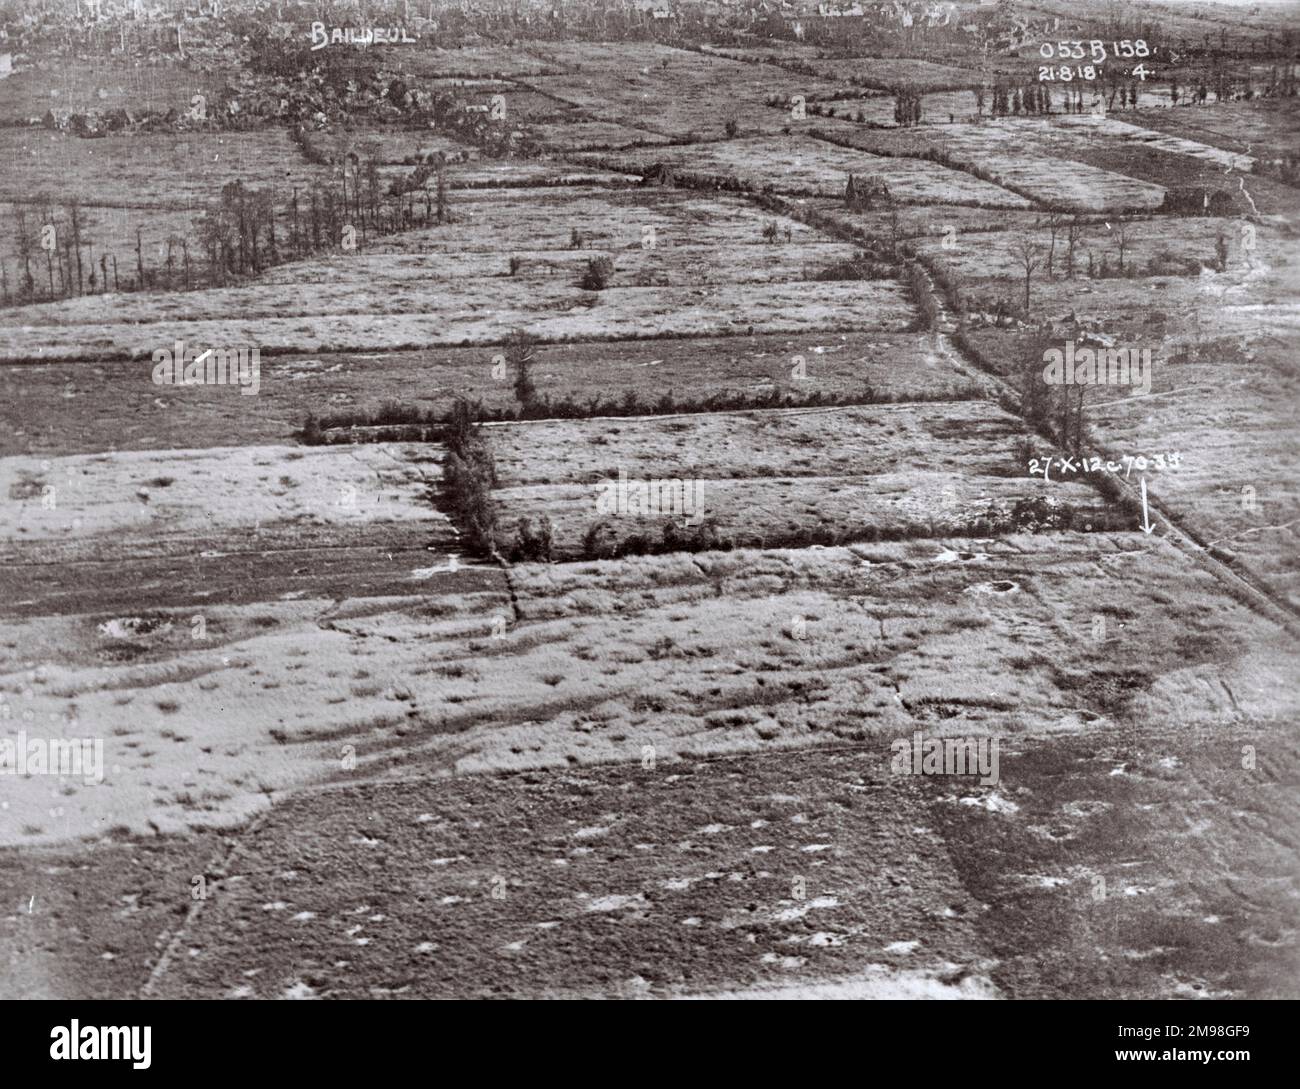 Schräge Luftaufnahme eines Muschelgebiets zwischen Bailleul, Nord, Nordfrankreich, und Neuve Eglise, Westflandern, Belgien am 21. August 1918. Es war ein Bereich deutscher Frontgräben. Stockfoto